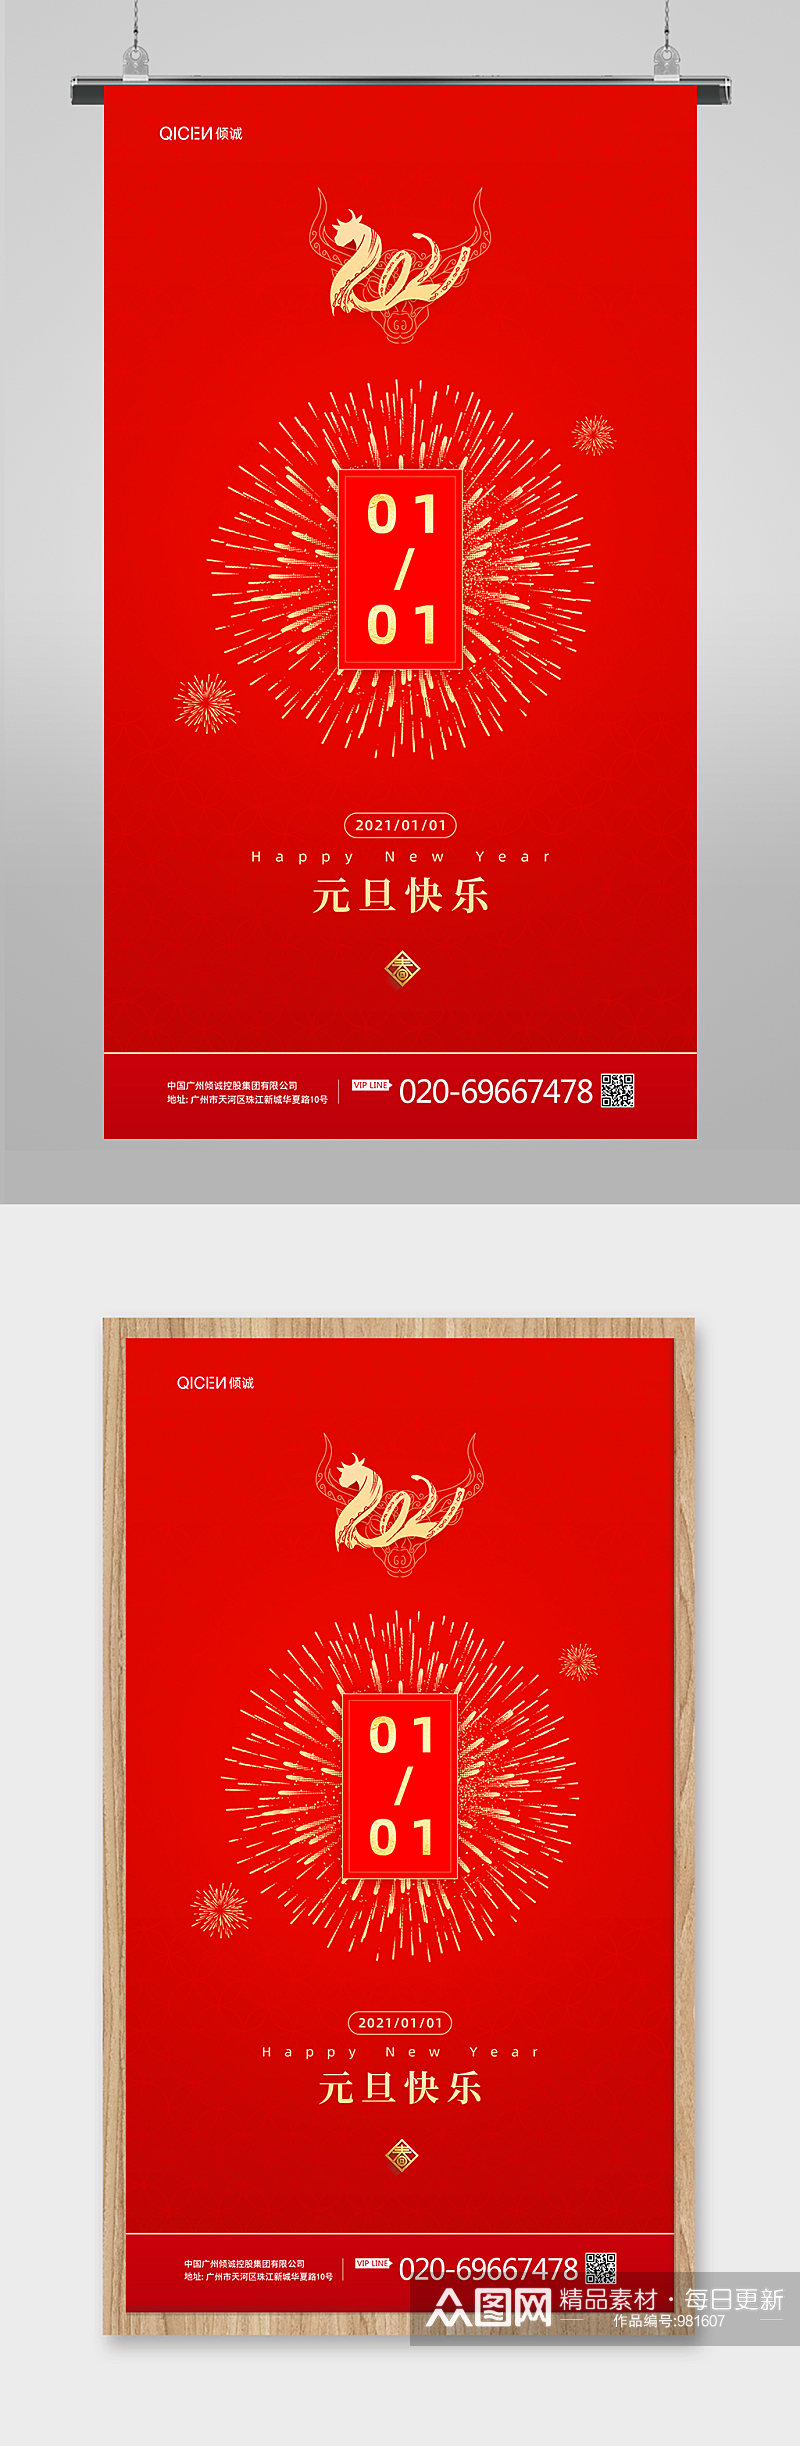 红色喜庆元旦节H5地产海报启动页素材